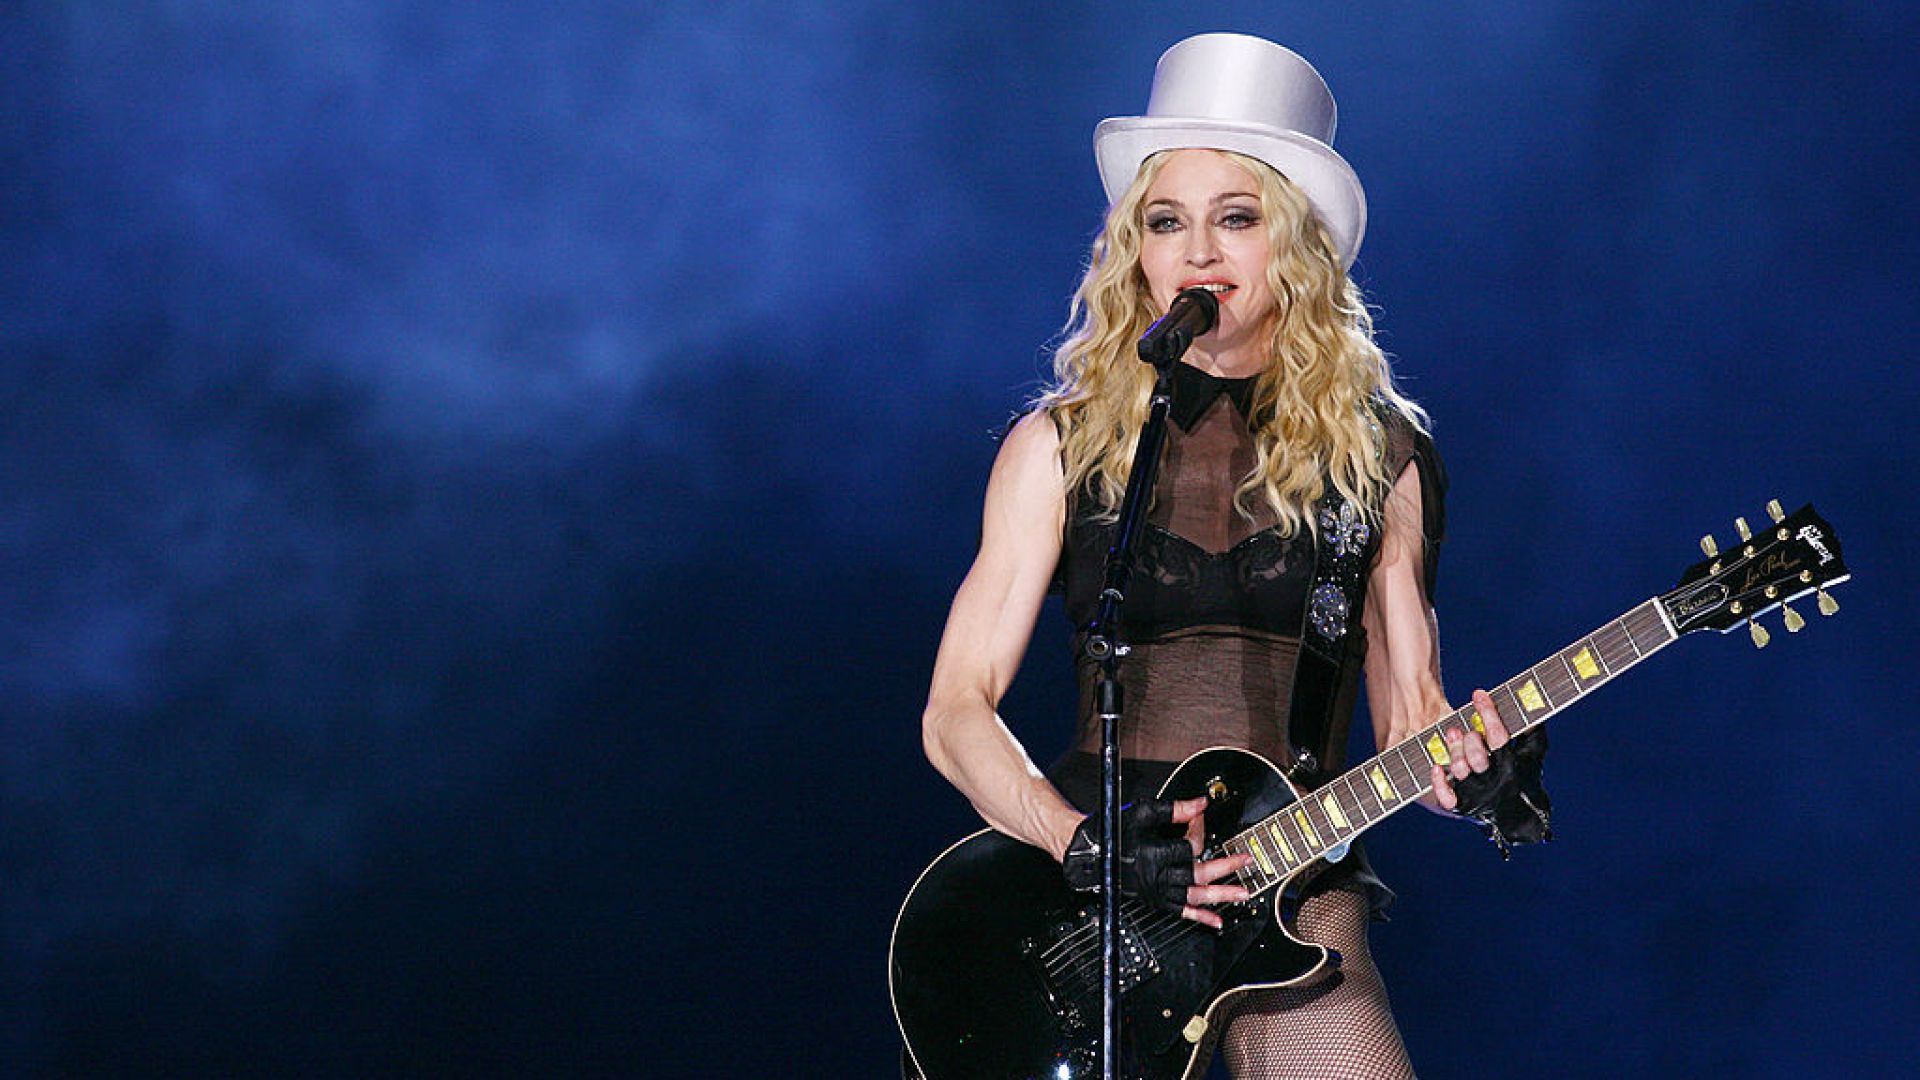 Мадонна объявляет тур в честь своего 40-летия на сцене 